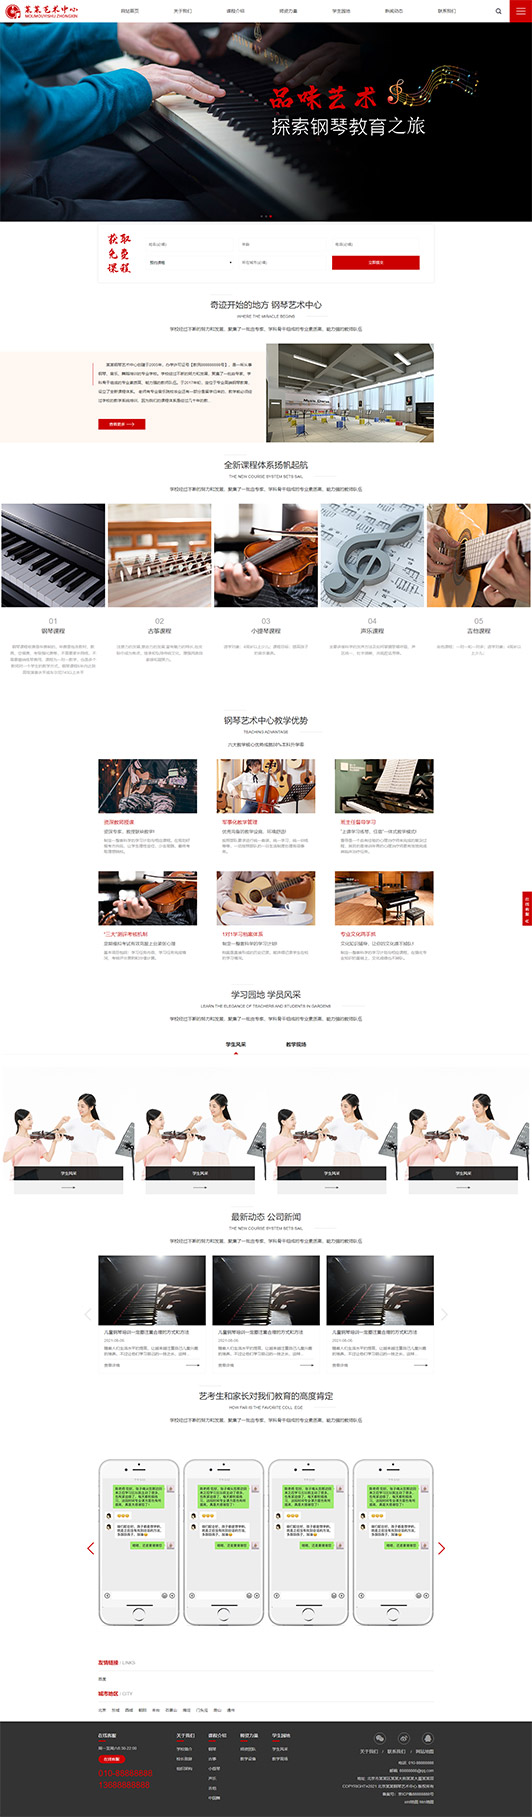 鹤壁钢琴艺术培训公司响应式企业网站